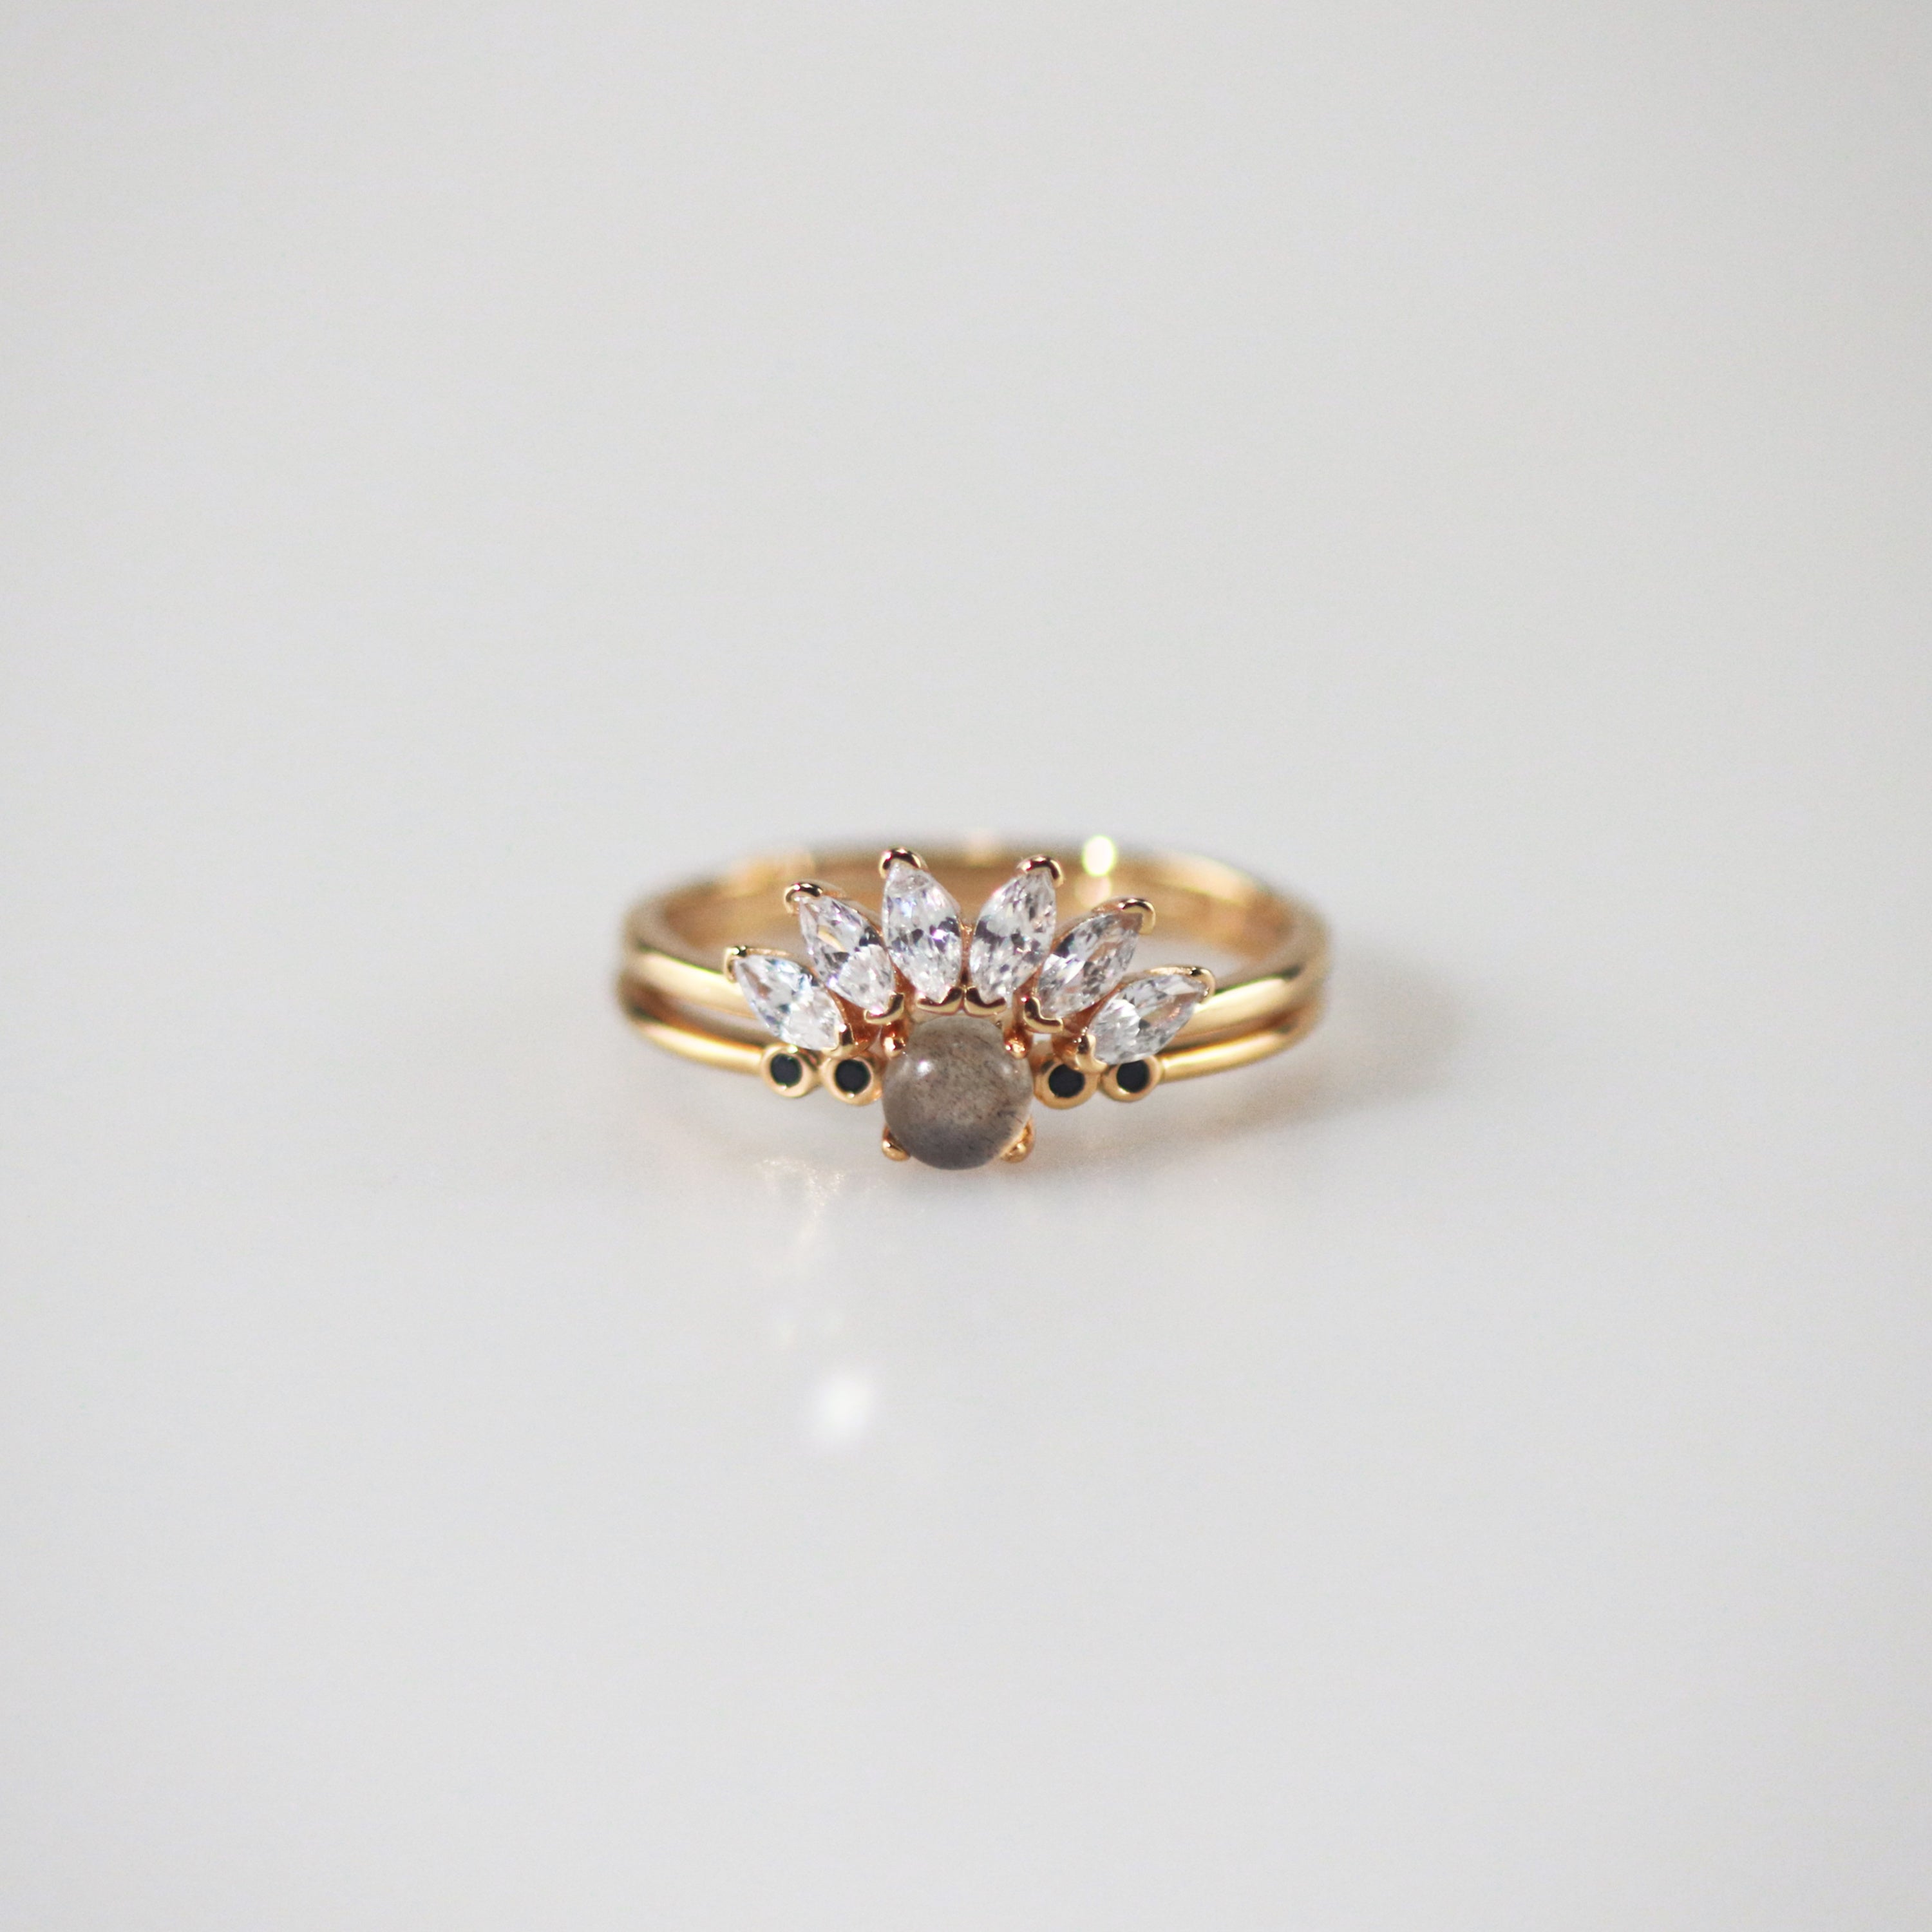 Meideya Jewelry Labradorite ring and Contour gemstone band ring